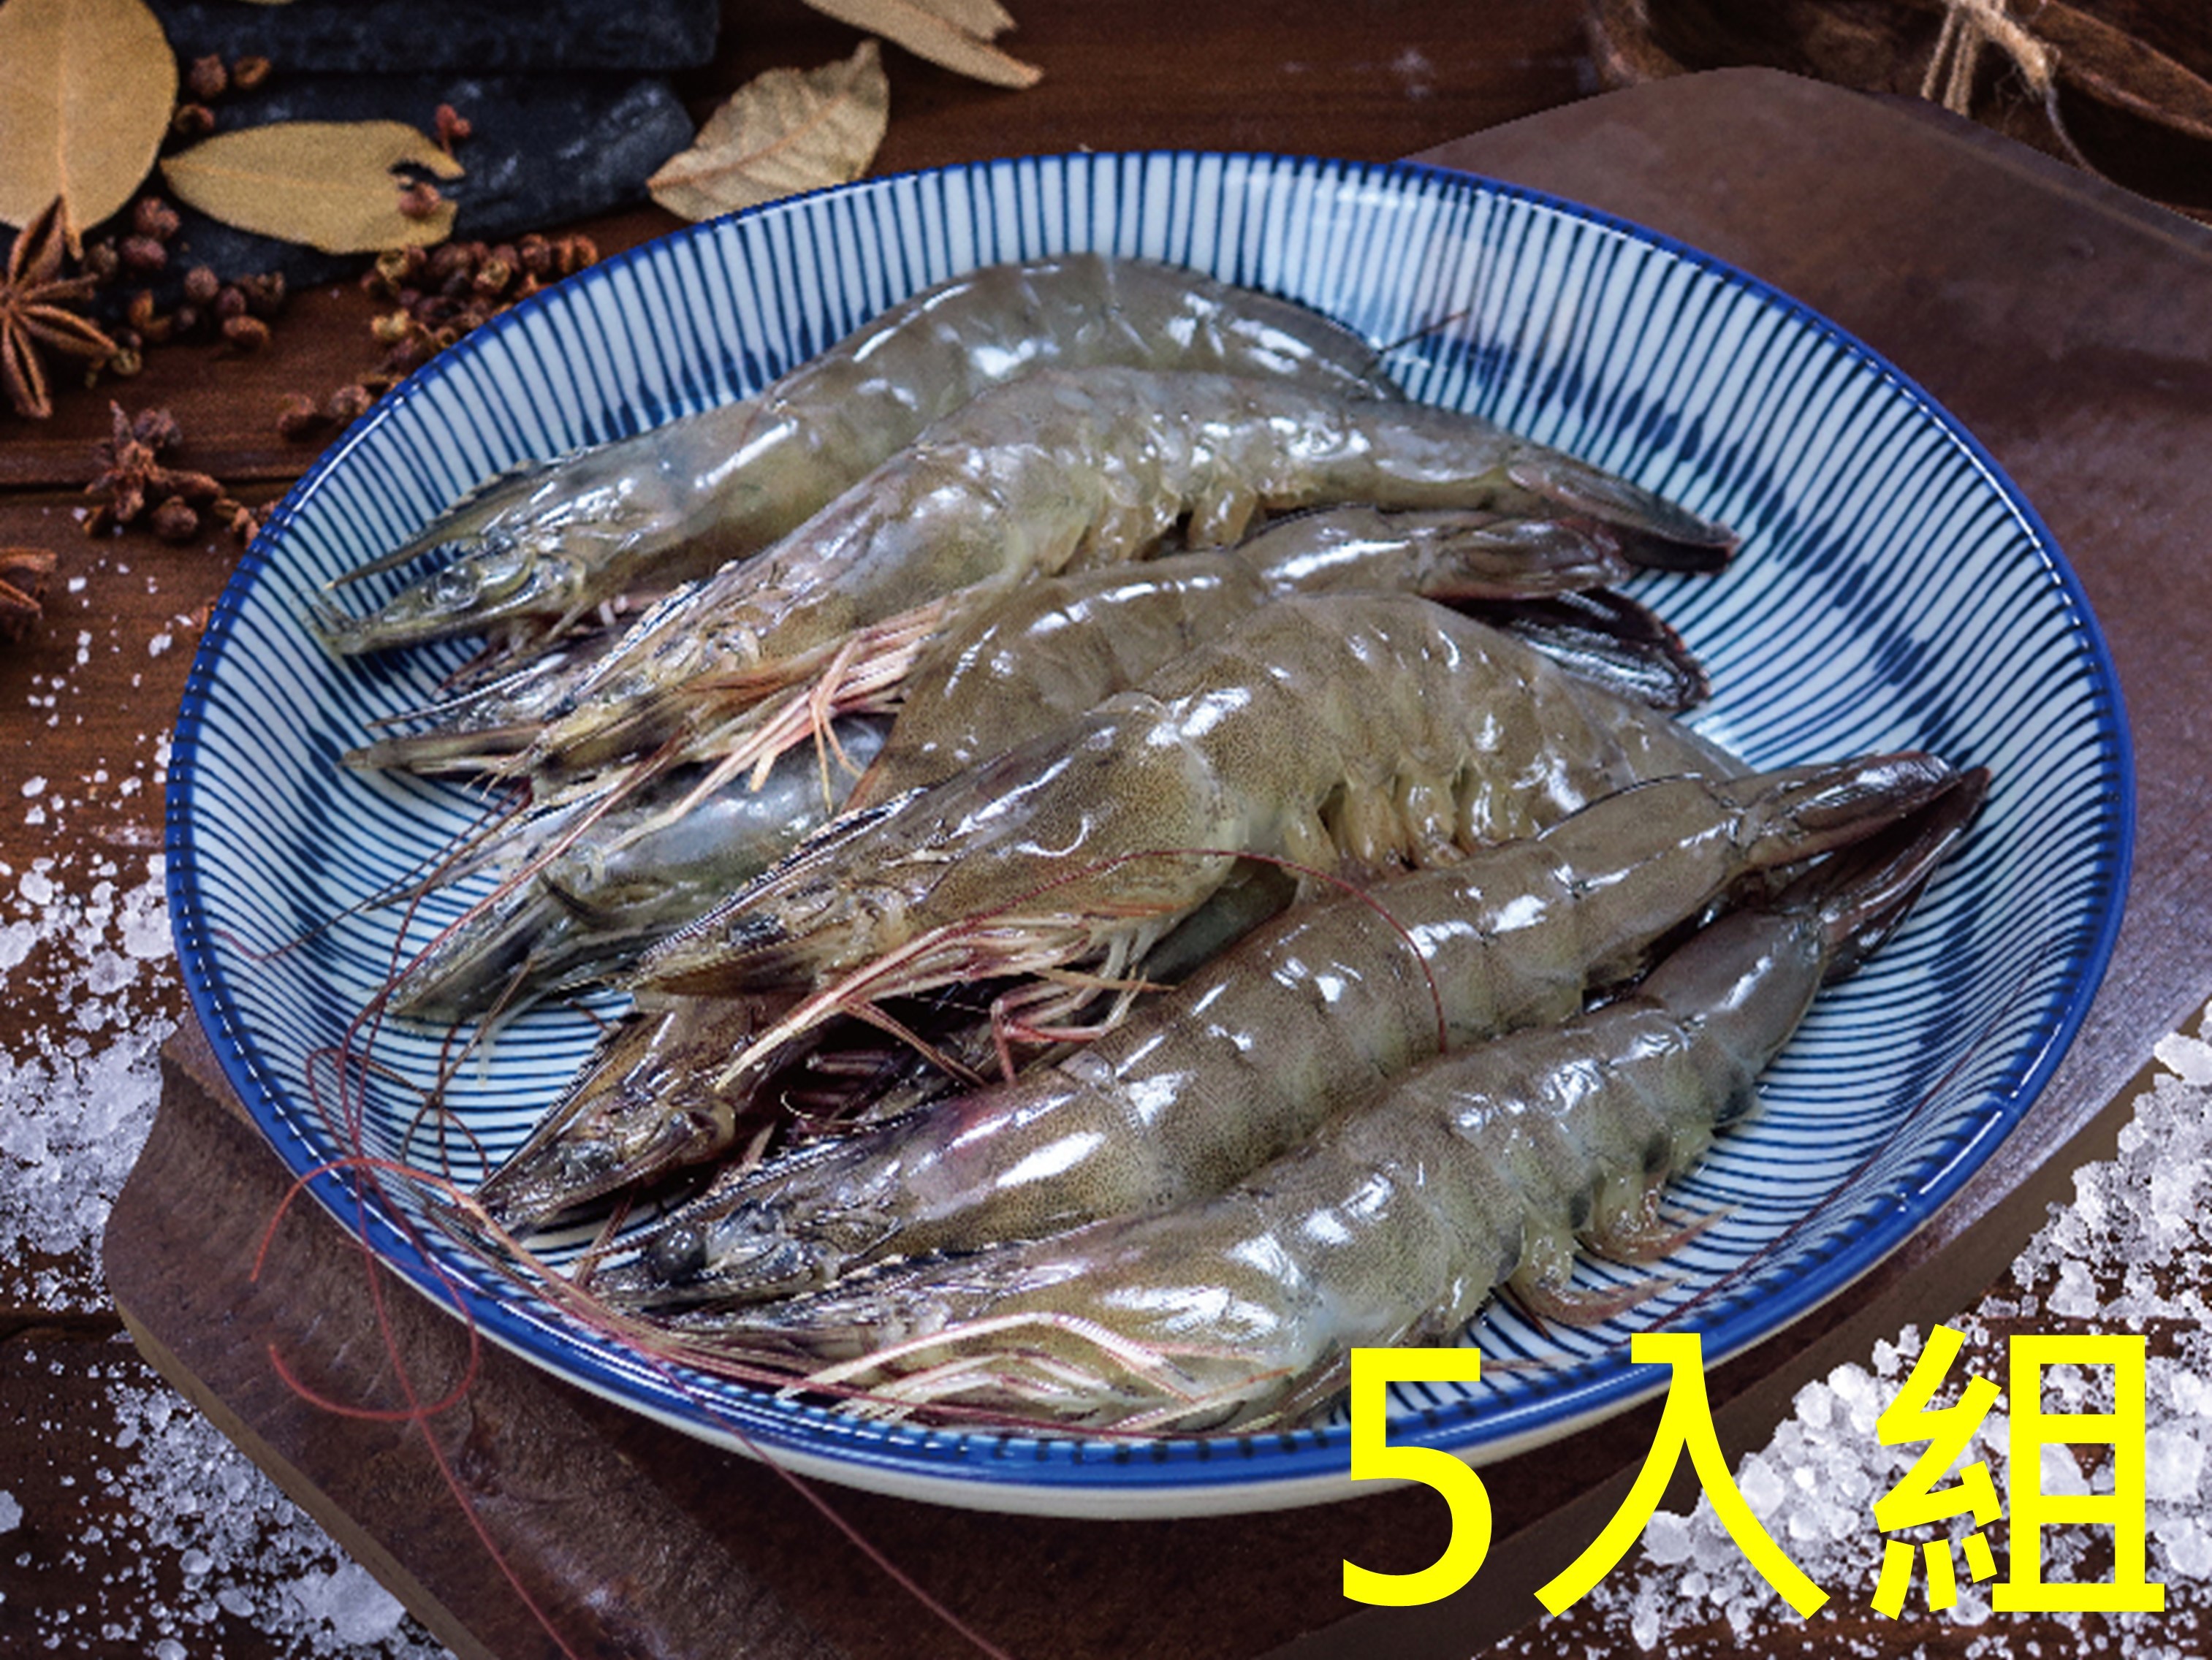 好水蝦-白蝦 (5入超值組)